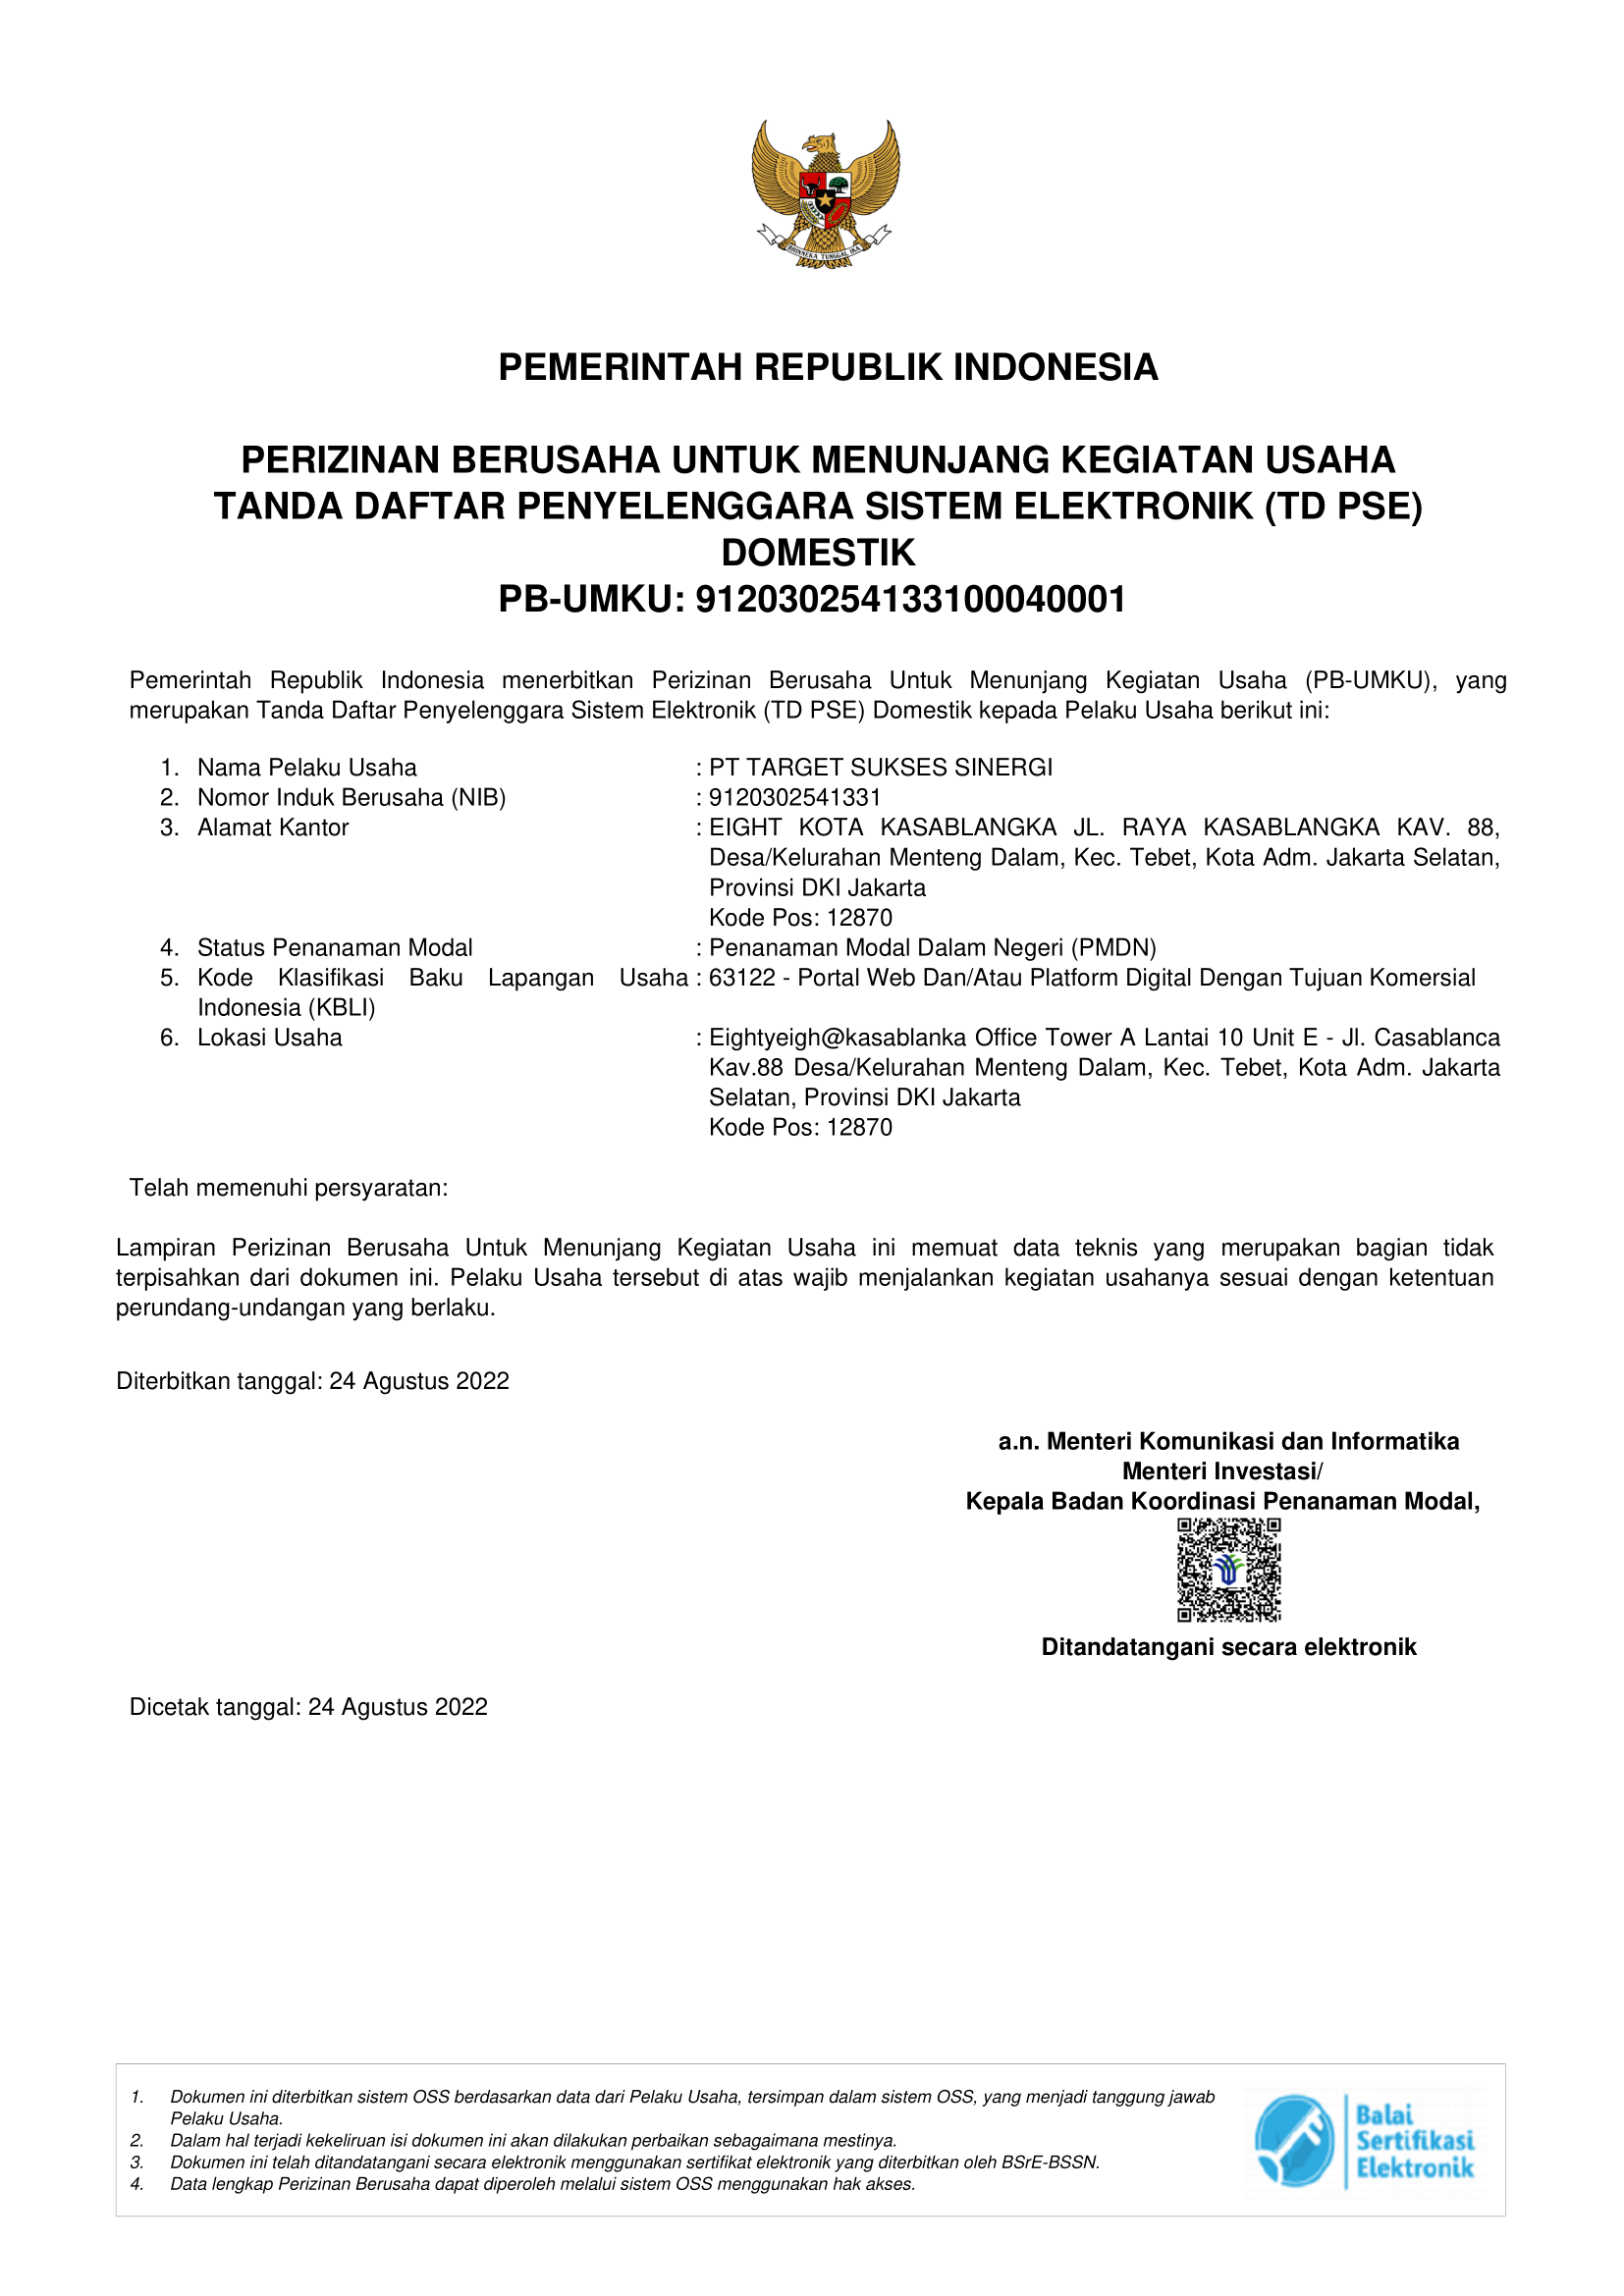 MTARGET terdaftar di PSE Kominfo.